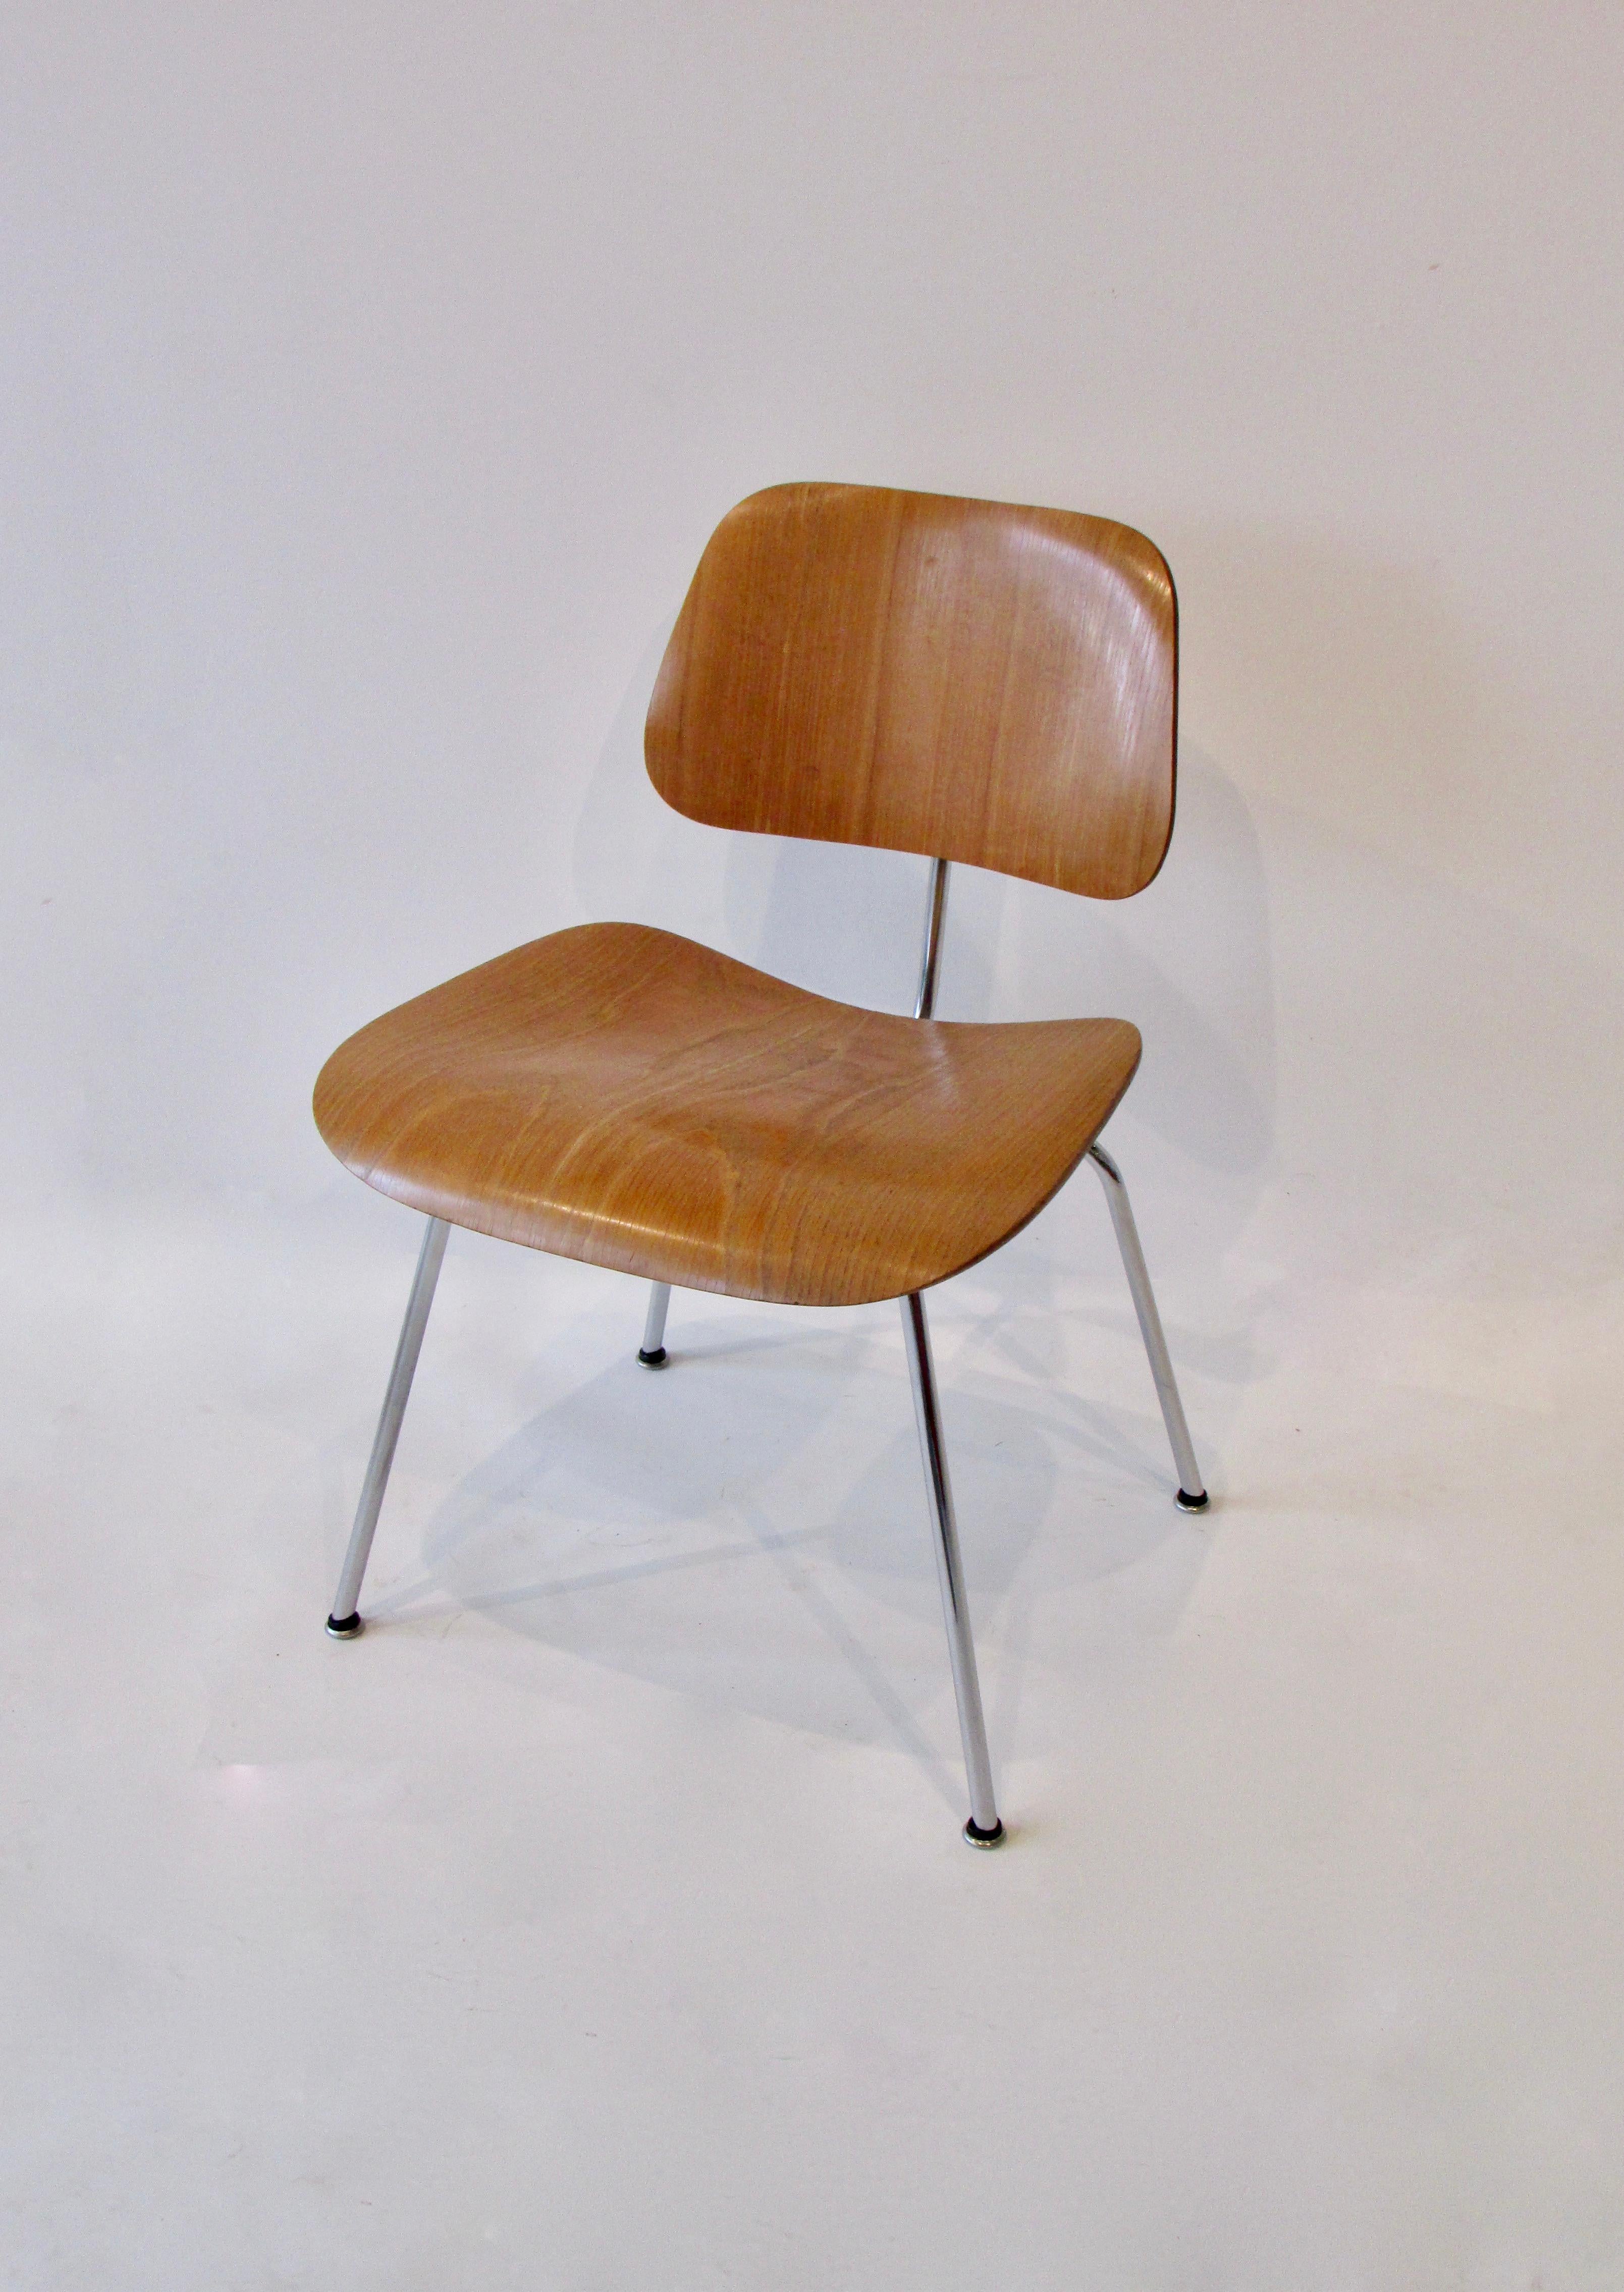 Très belle chaise de salle à manger Charles et Ray Eames en métal (DCM ). La structure chromée soutient l'assise et le dossier en frêne. Conserve l'étiquette d'origine Eames Evans Herman Miller water decal. Le Label date de la fin des années 1940.